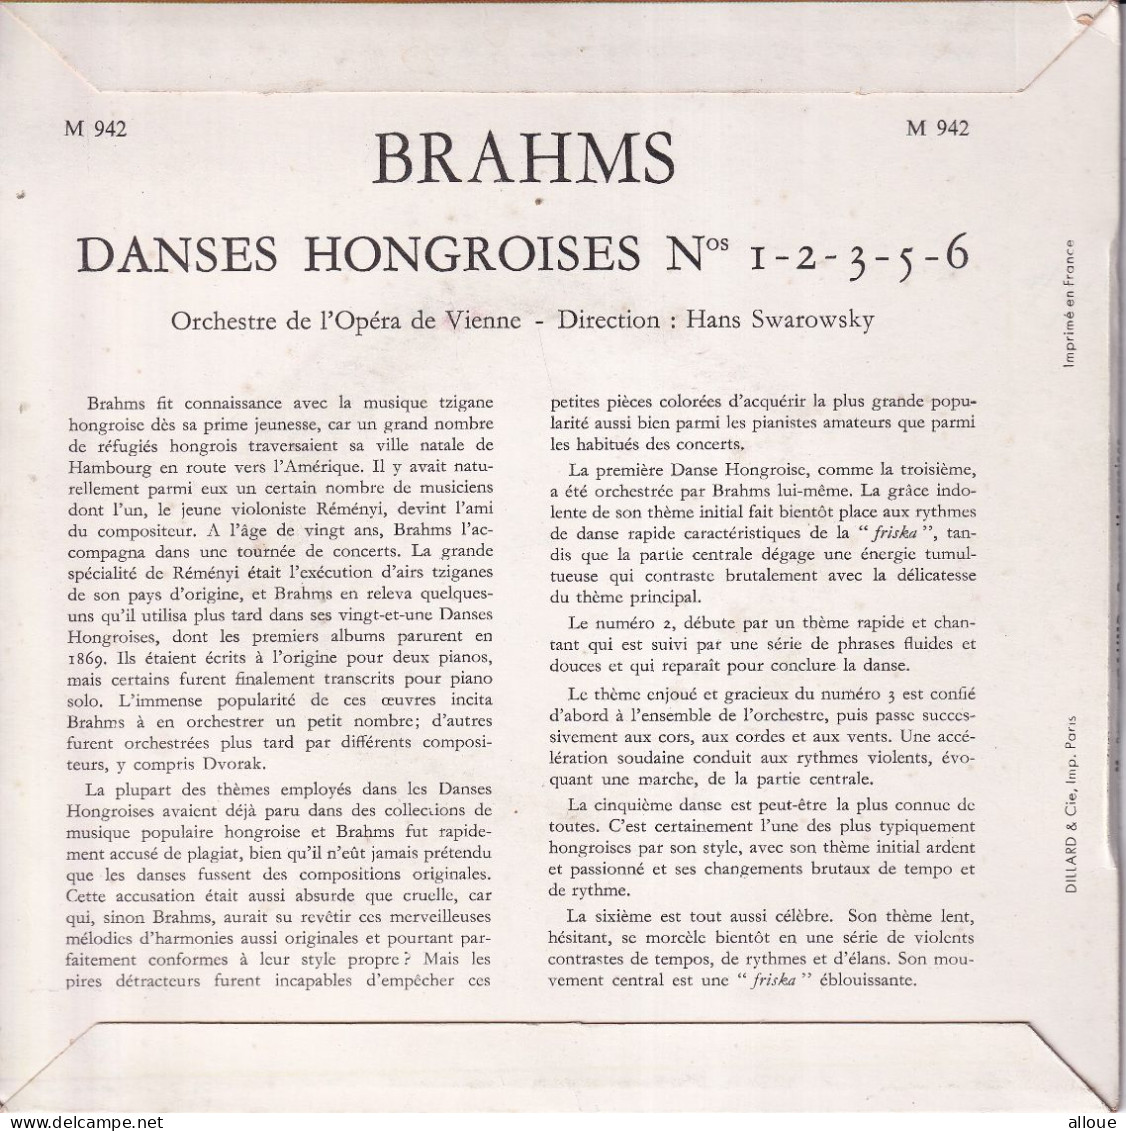 ORCHESTRE DE L'OPERA DE VIENNE - DIRECTION HANS SWAROWSKY - FR EP - BRAHMS - DANCES HONGROISES - Klassik